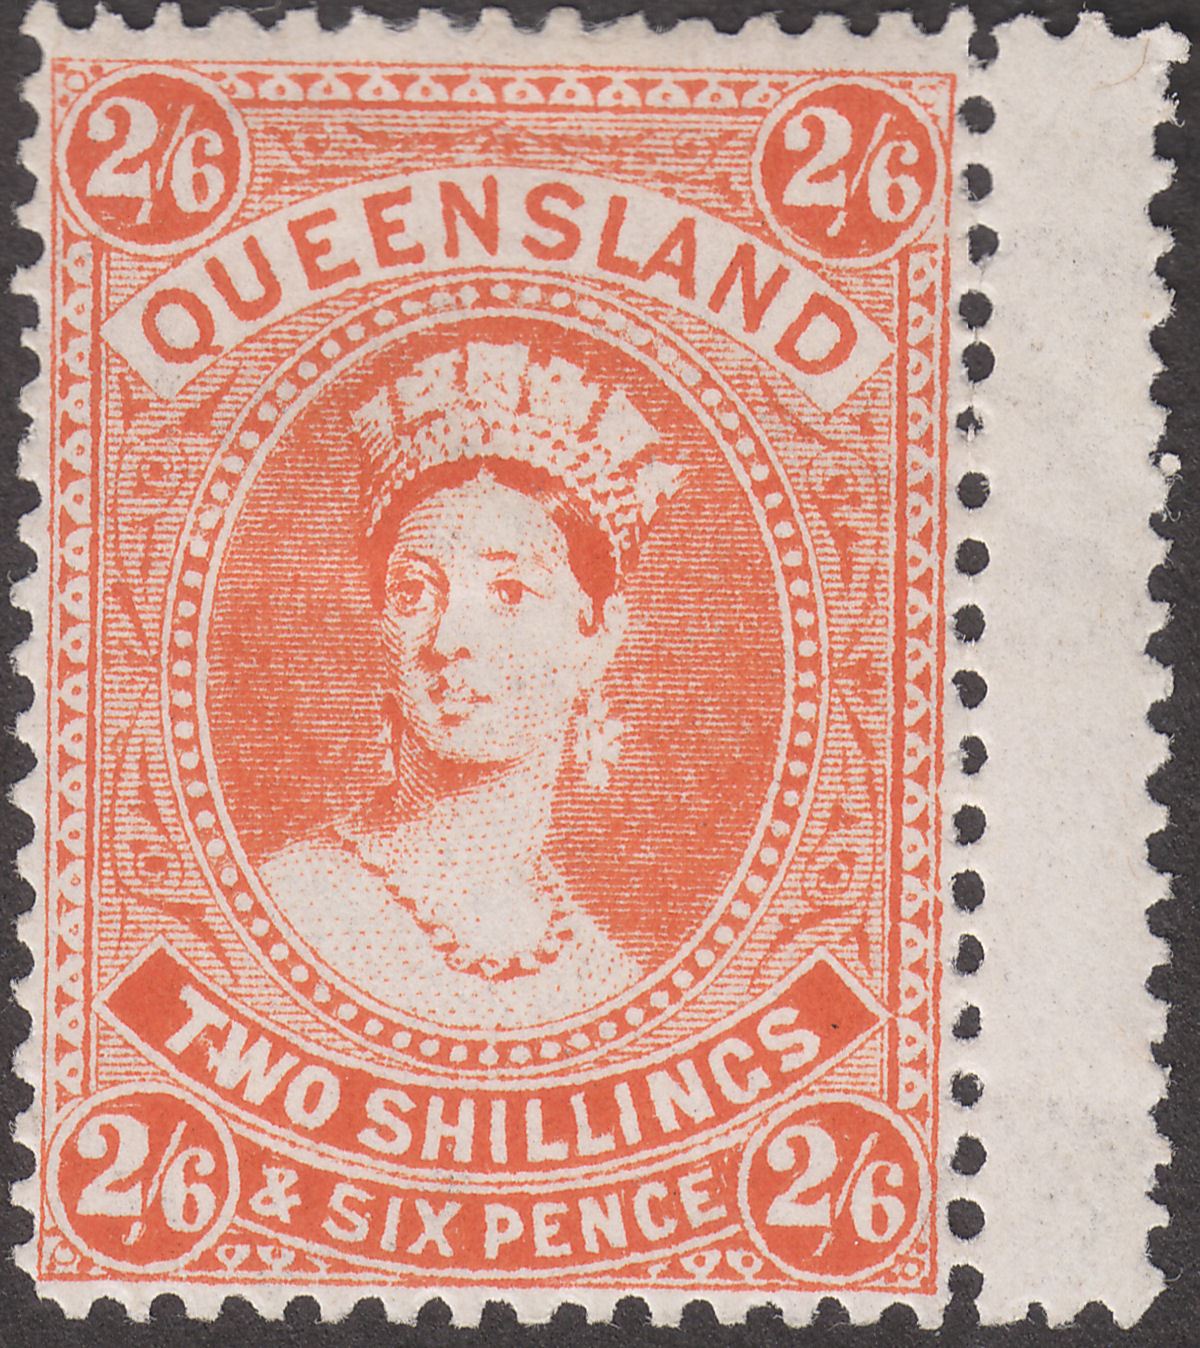 Queensland 1903 Queen Victoria 2sh6d Vermilion Mint SG270 cat £225